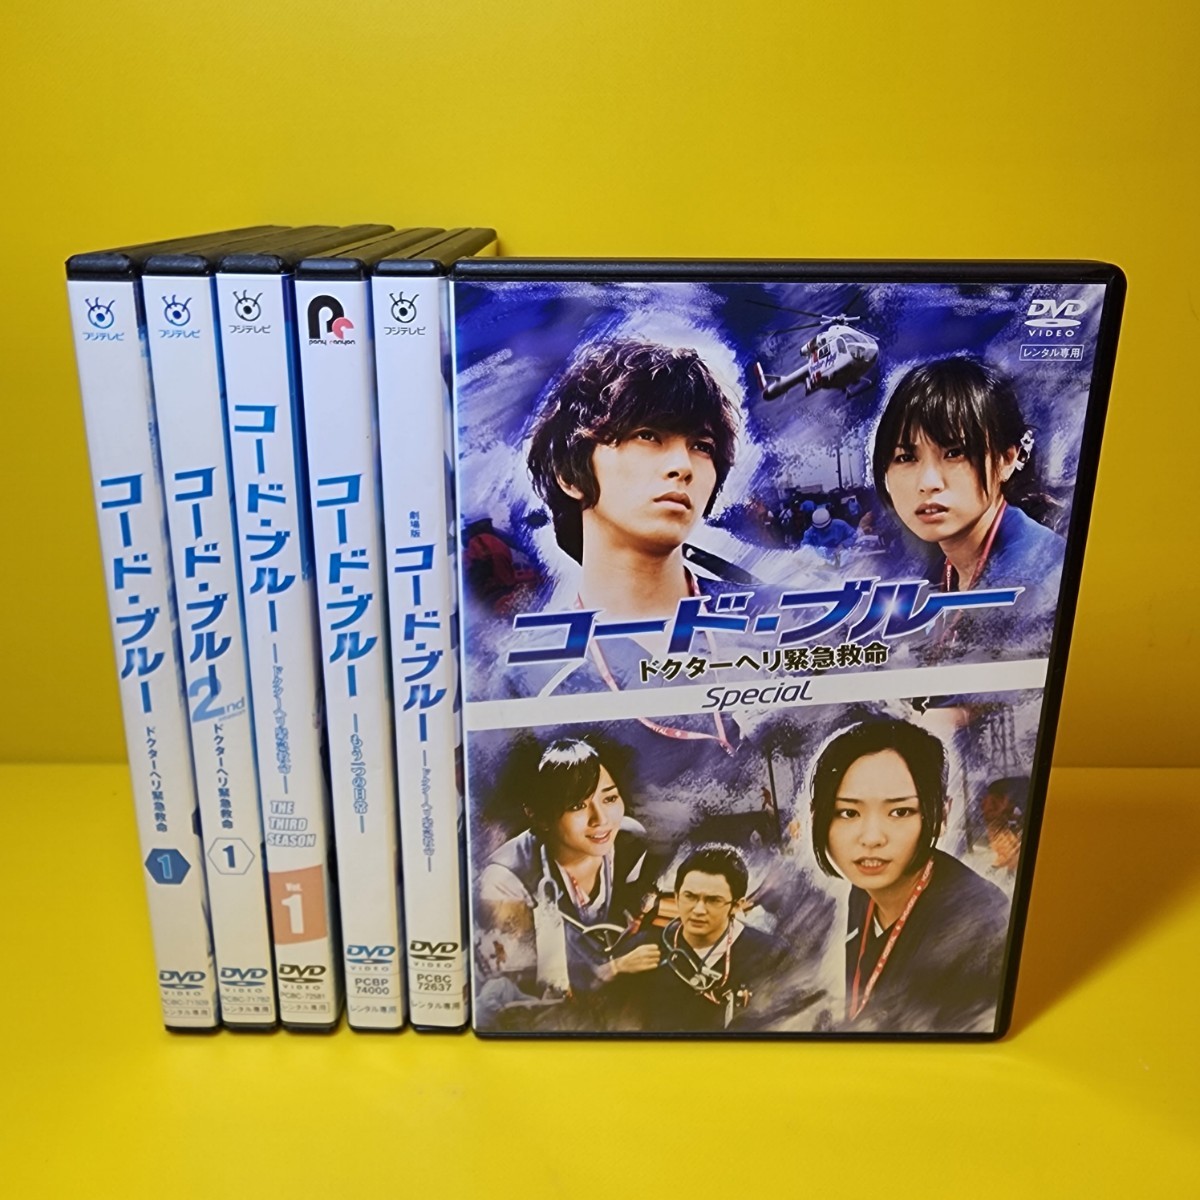 コード・ブルー ドクターヘリ緊急救命 2nd season DVD全巻セット 